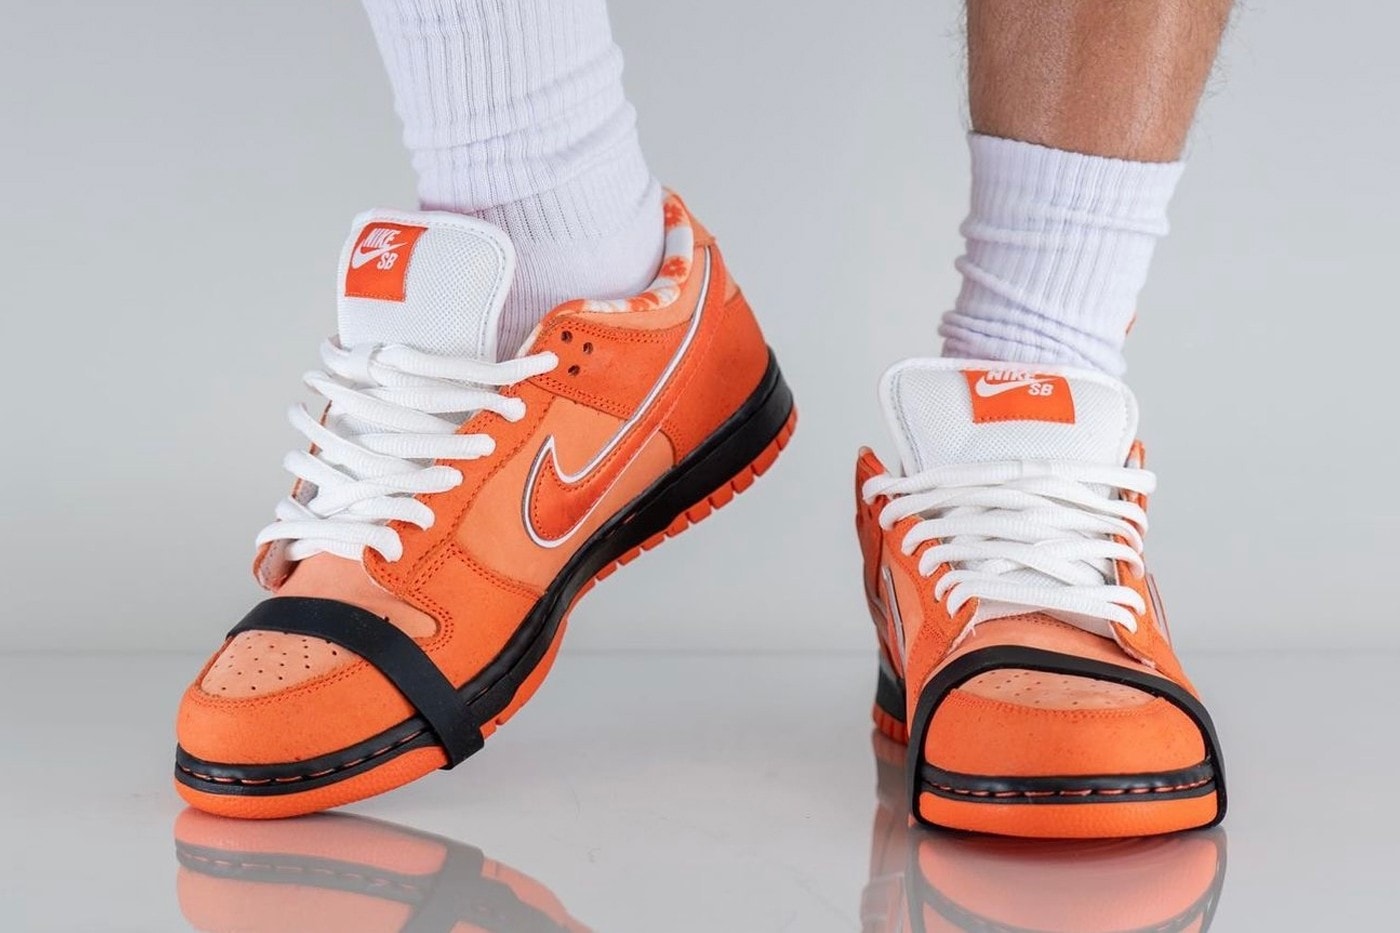 率先近賞 Concepts x Nike SB Dunk Low 最新配色「Orange Lobster」上腳圖輯